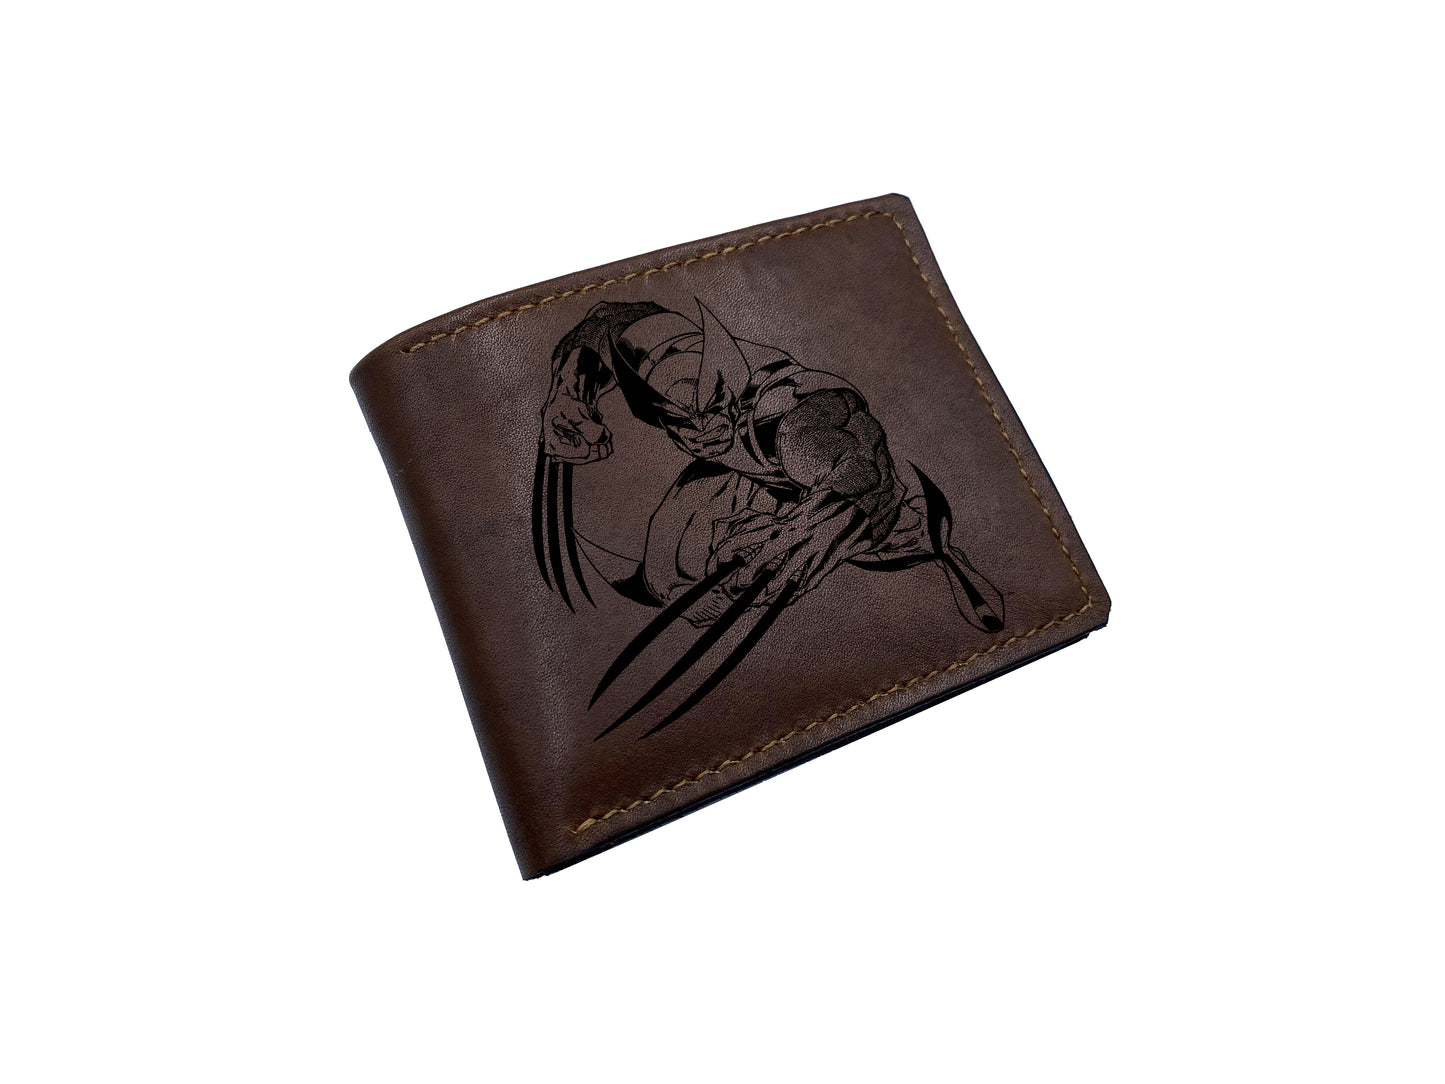 Mayan Corner - Wolverine Logan superheroes leather handmade wallet, superheroes marvel wallet for men - 2710221